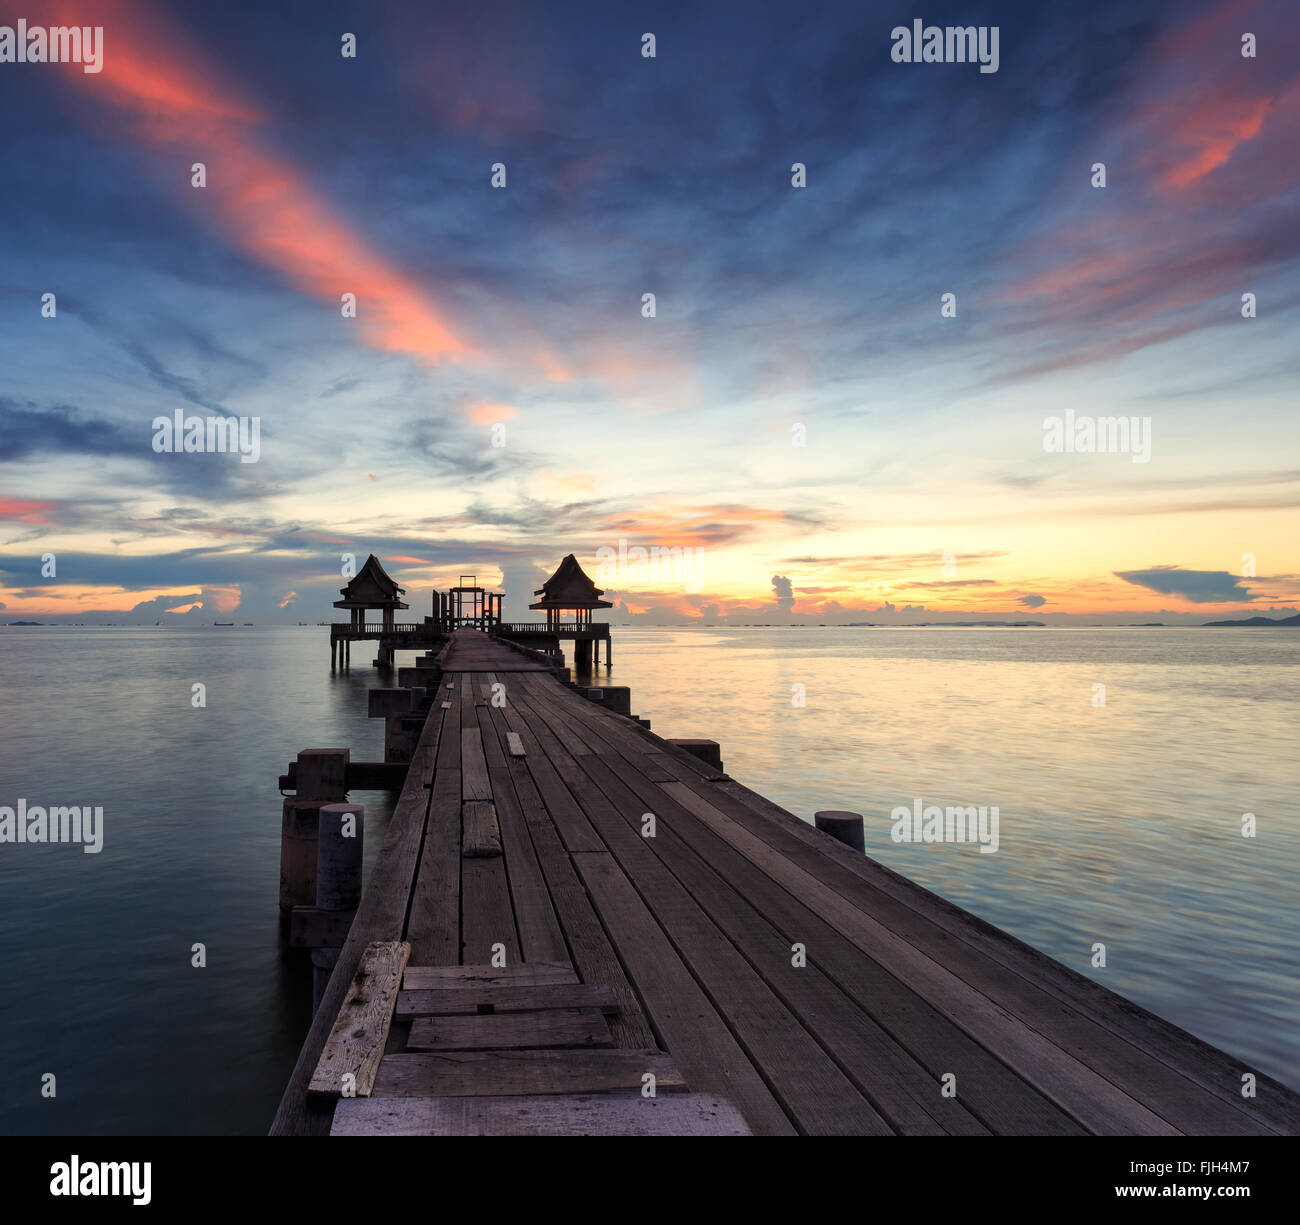 Le pont sur la mer avec un beau lever de soleil, Rayong, Thaïlande Banque D'Images